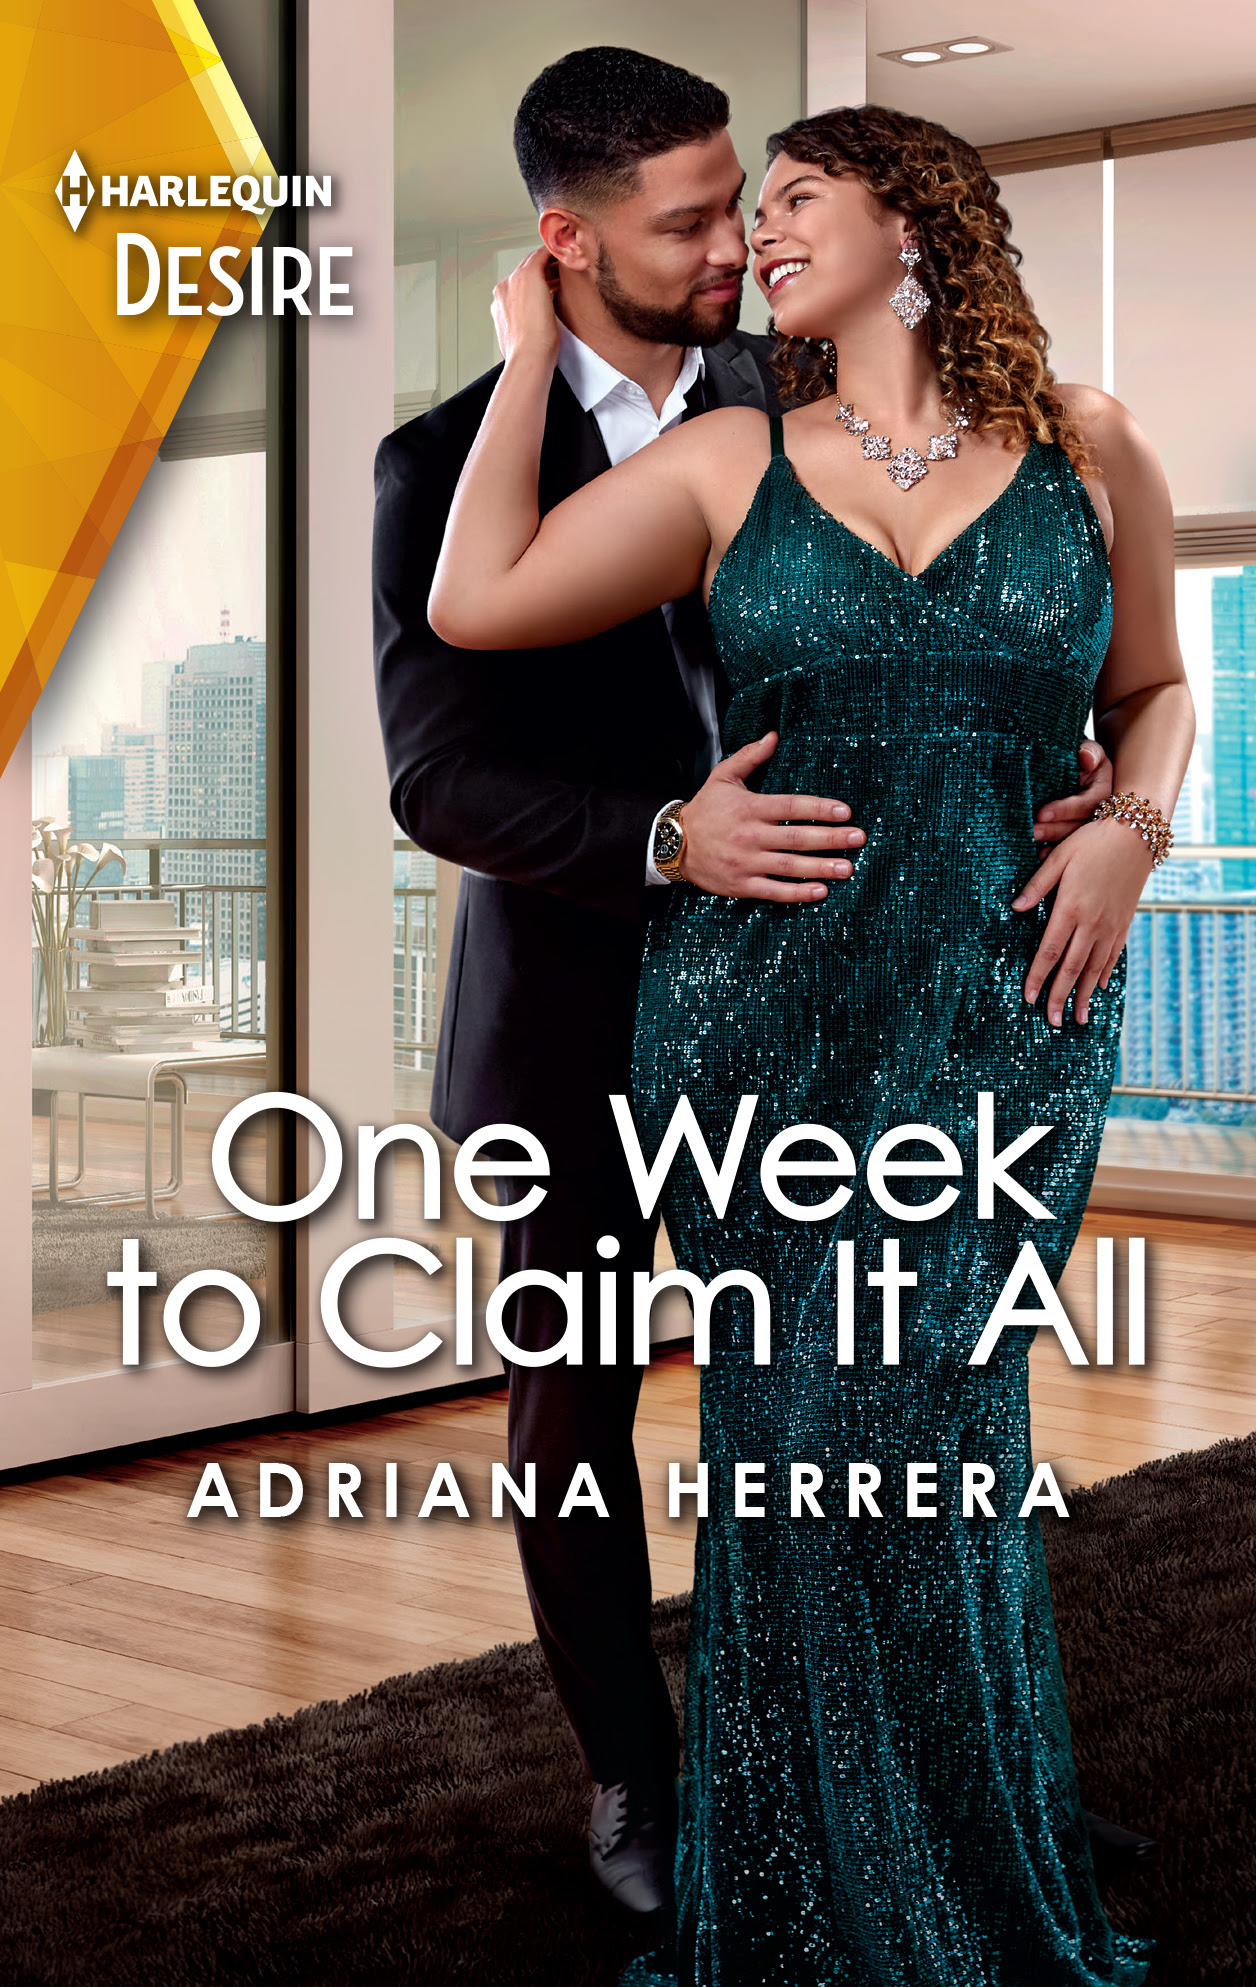 One Week To Claim it All by Adriana Herrera